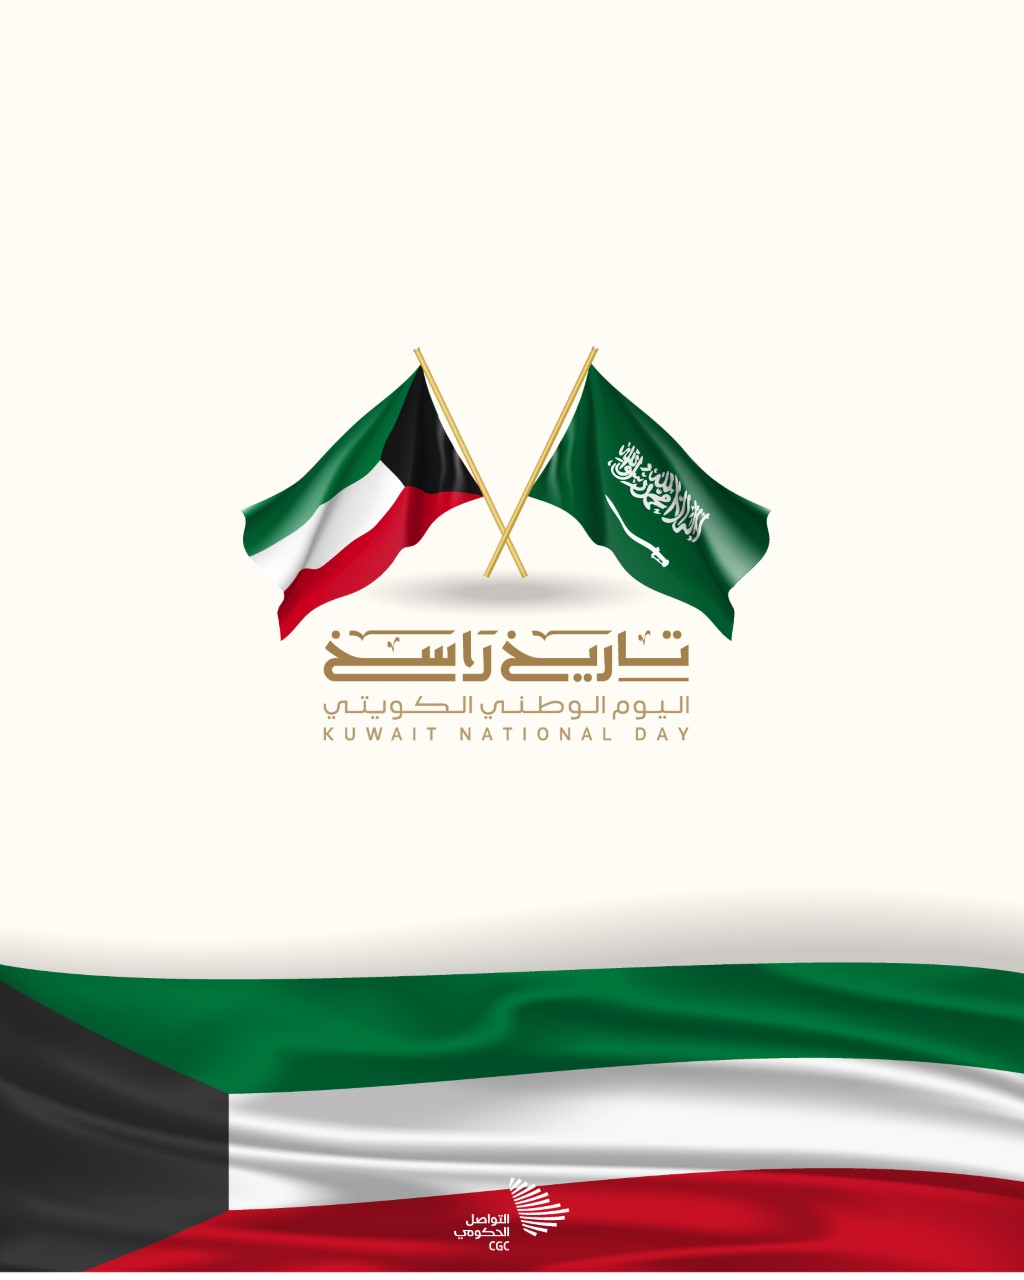 السعودية تصدر شعارا إعلاميا موحدا لمشاركاتها في الاحتفاء بأعياد الكويت الوطنية